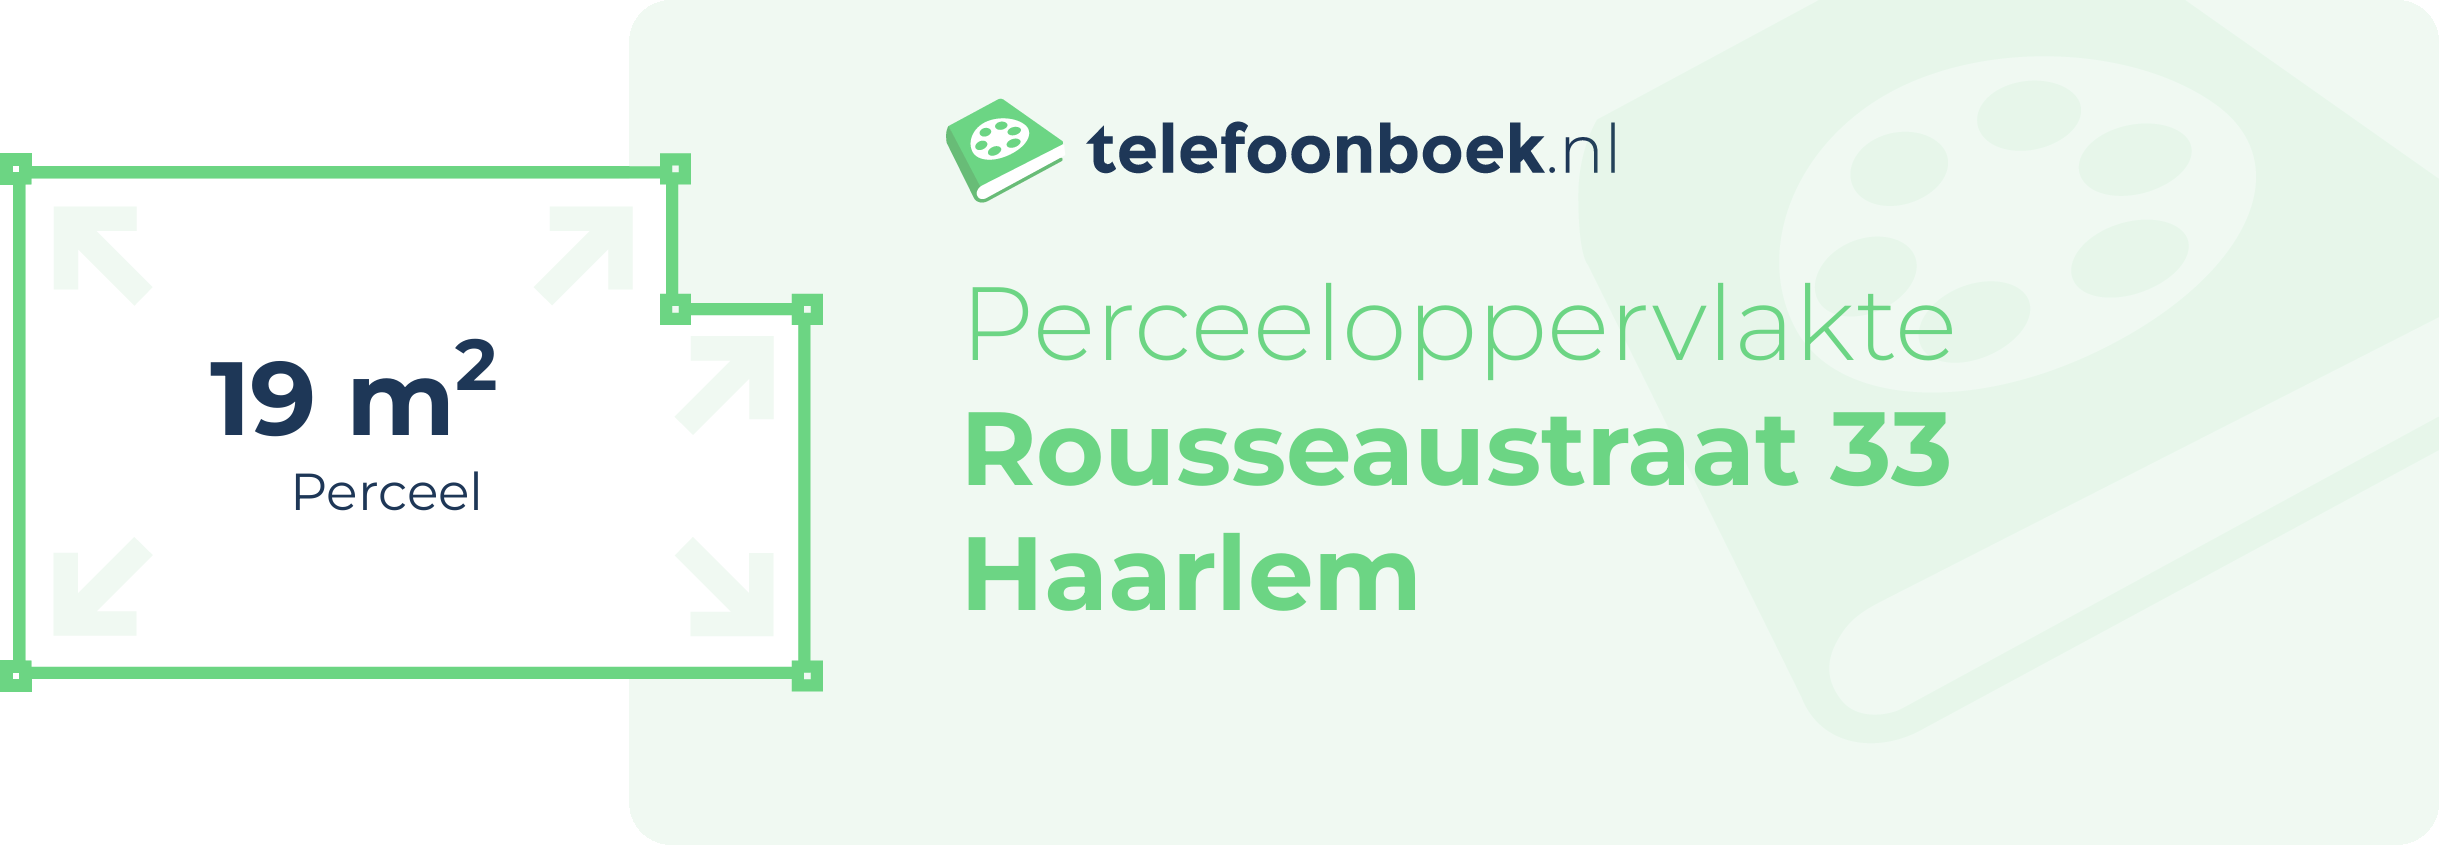 Perceeloppervlakte Rousseaustraat 33 Haarlem